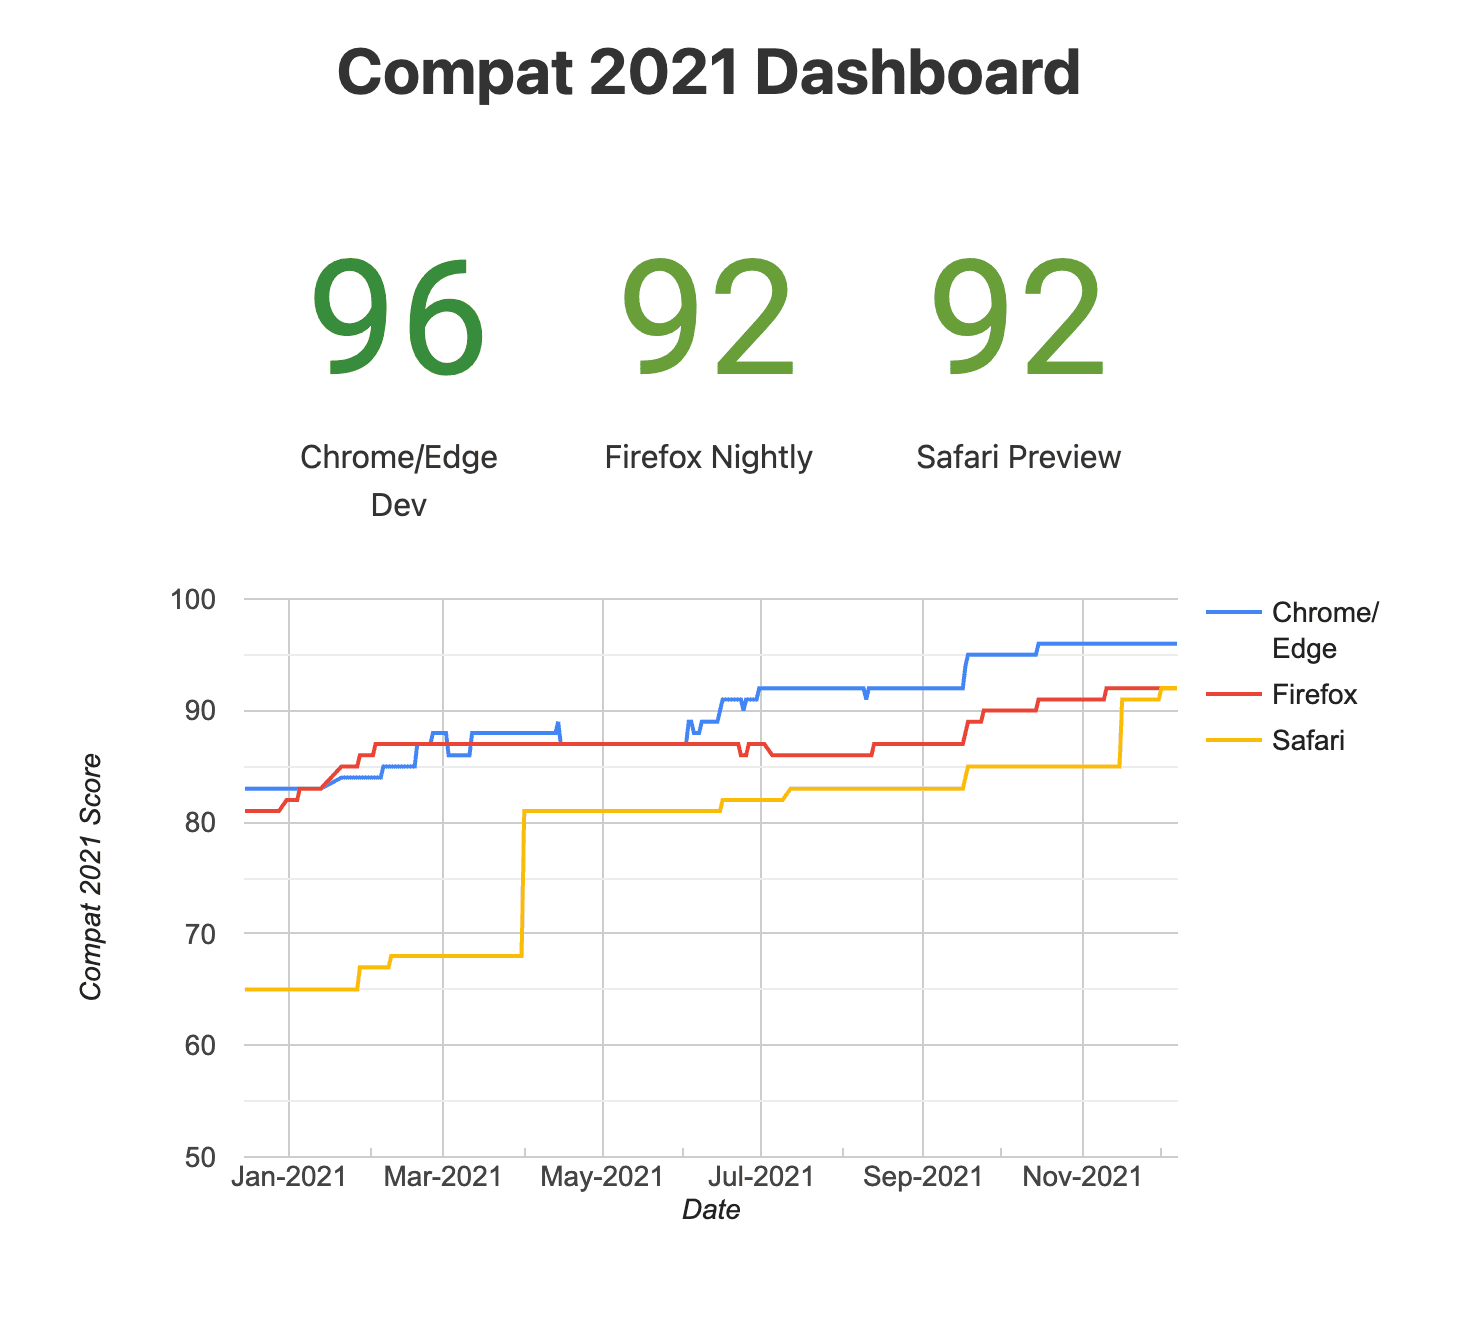 Compat의 스냅샷
2021 대시보드 (실험용 브라우저)